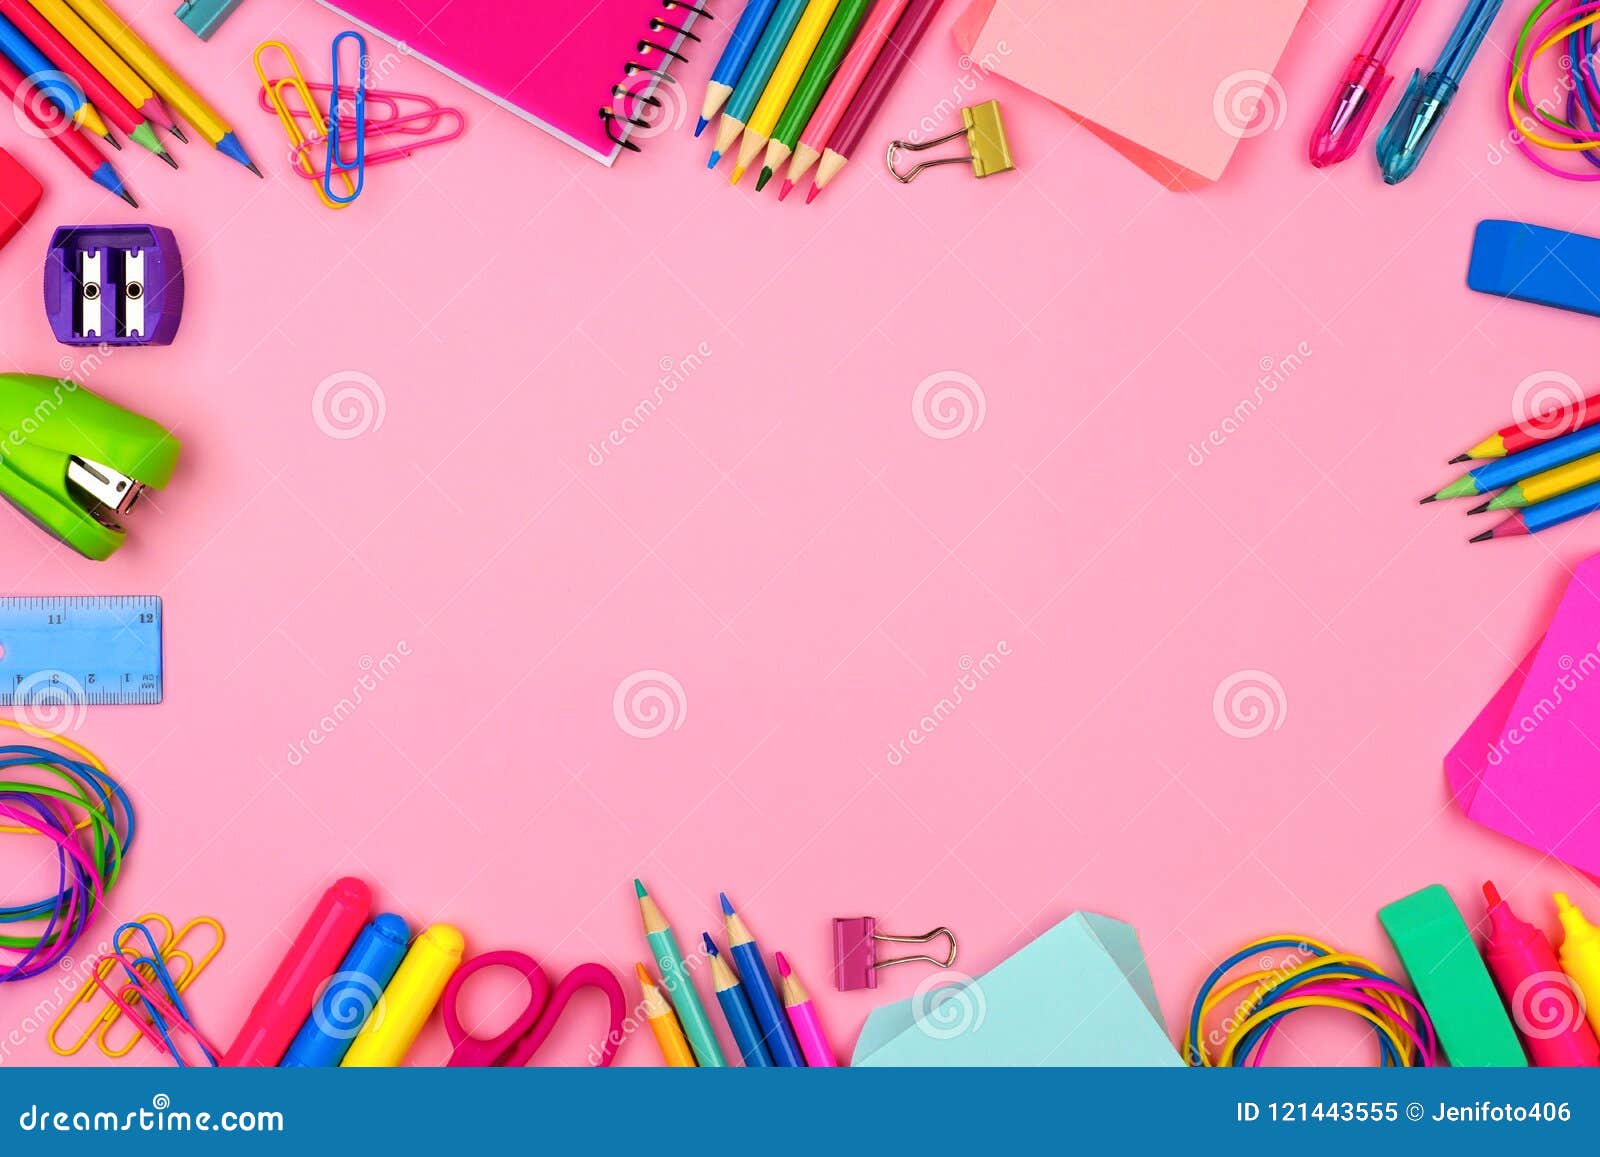 Khung đồ dùng học tập hồng pastel mang lại sự nhẹ nhàng và tinh tế cho bất kỳ không gian học tập nào, tạo ra không gian yên tĩnh và bình an giúp cho bạn tập trung học tập và làm việc.